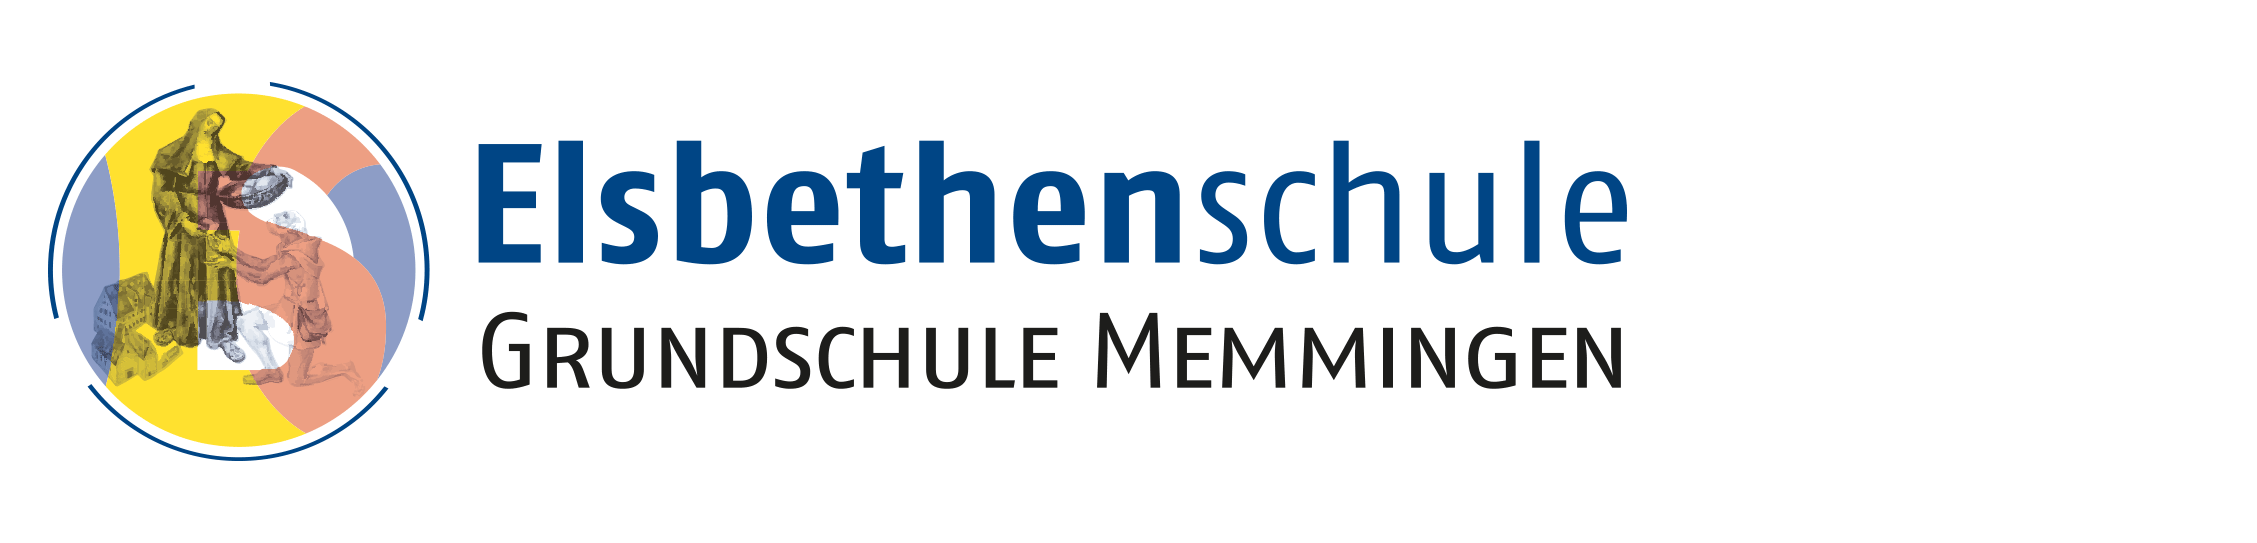 Elsbethenschule Grundschule Memmingen